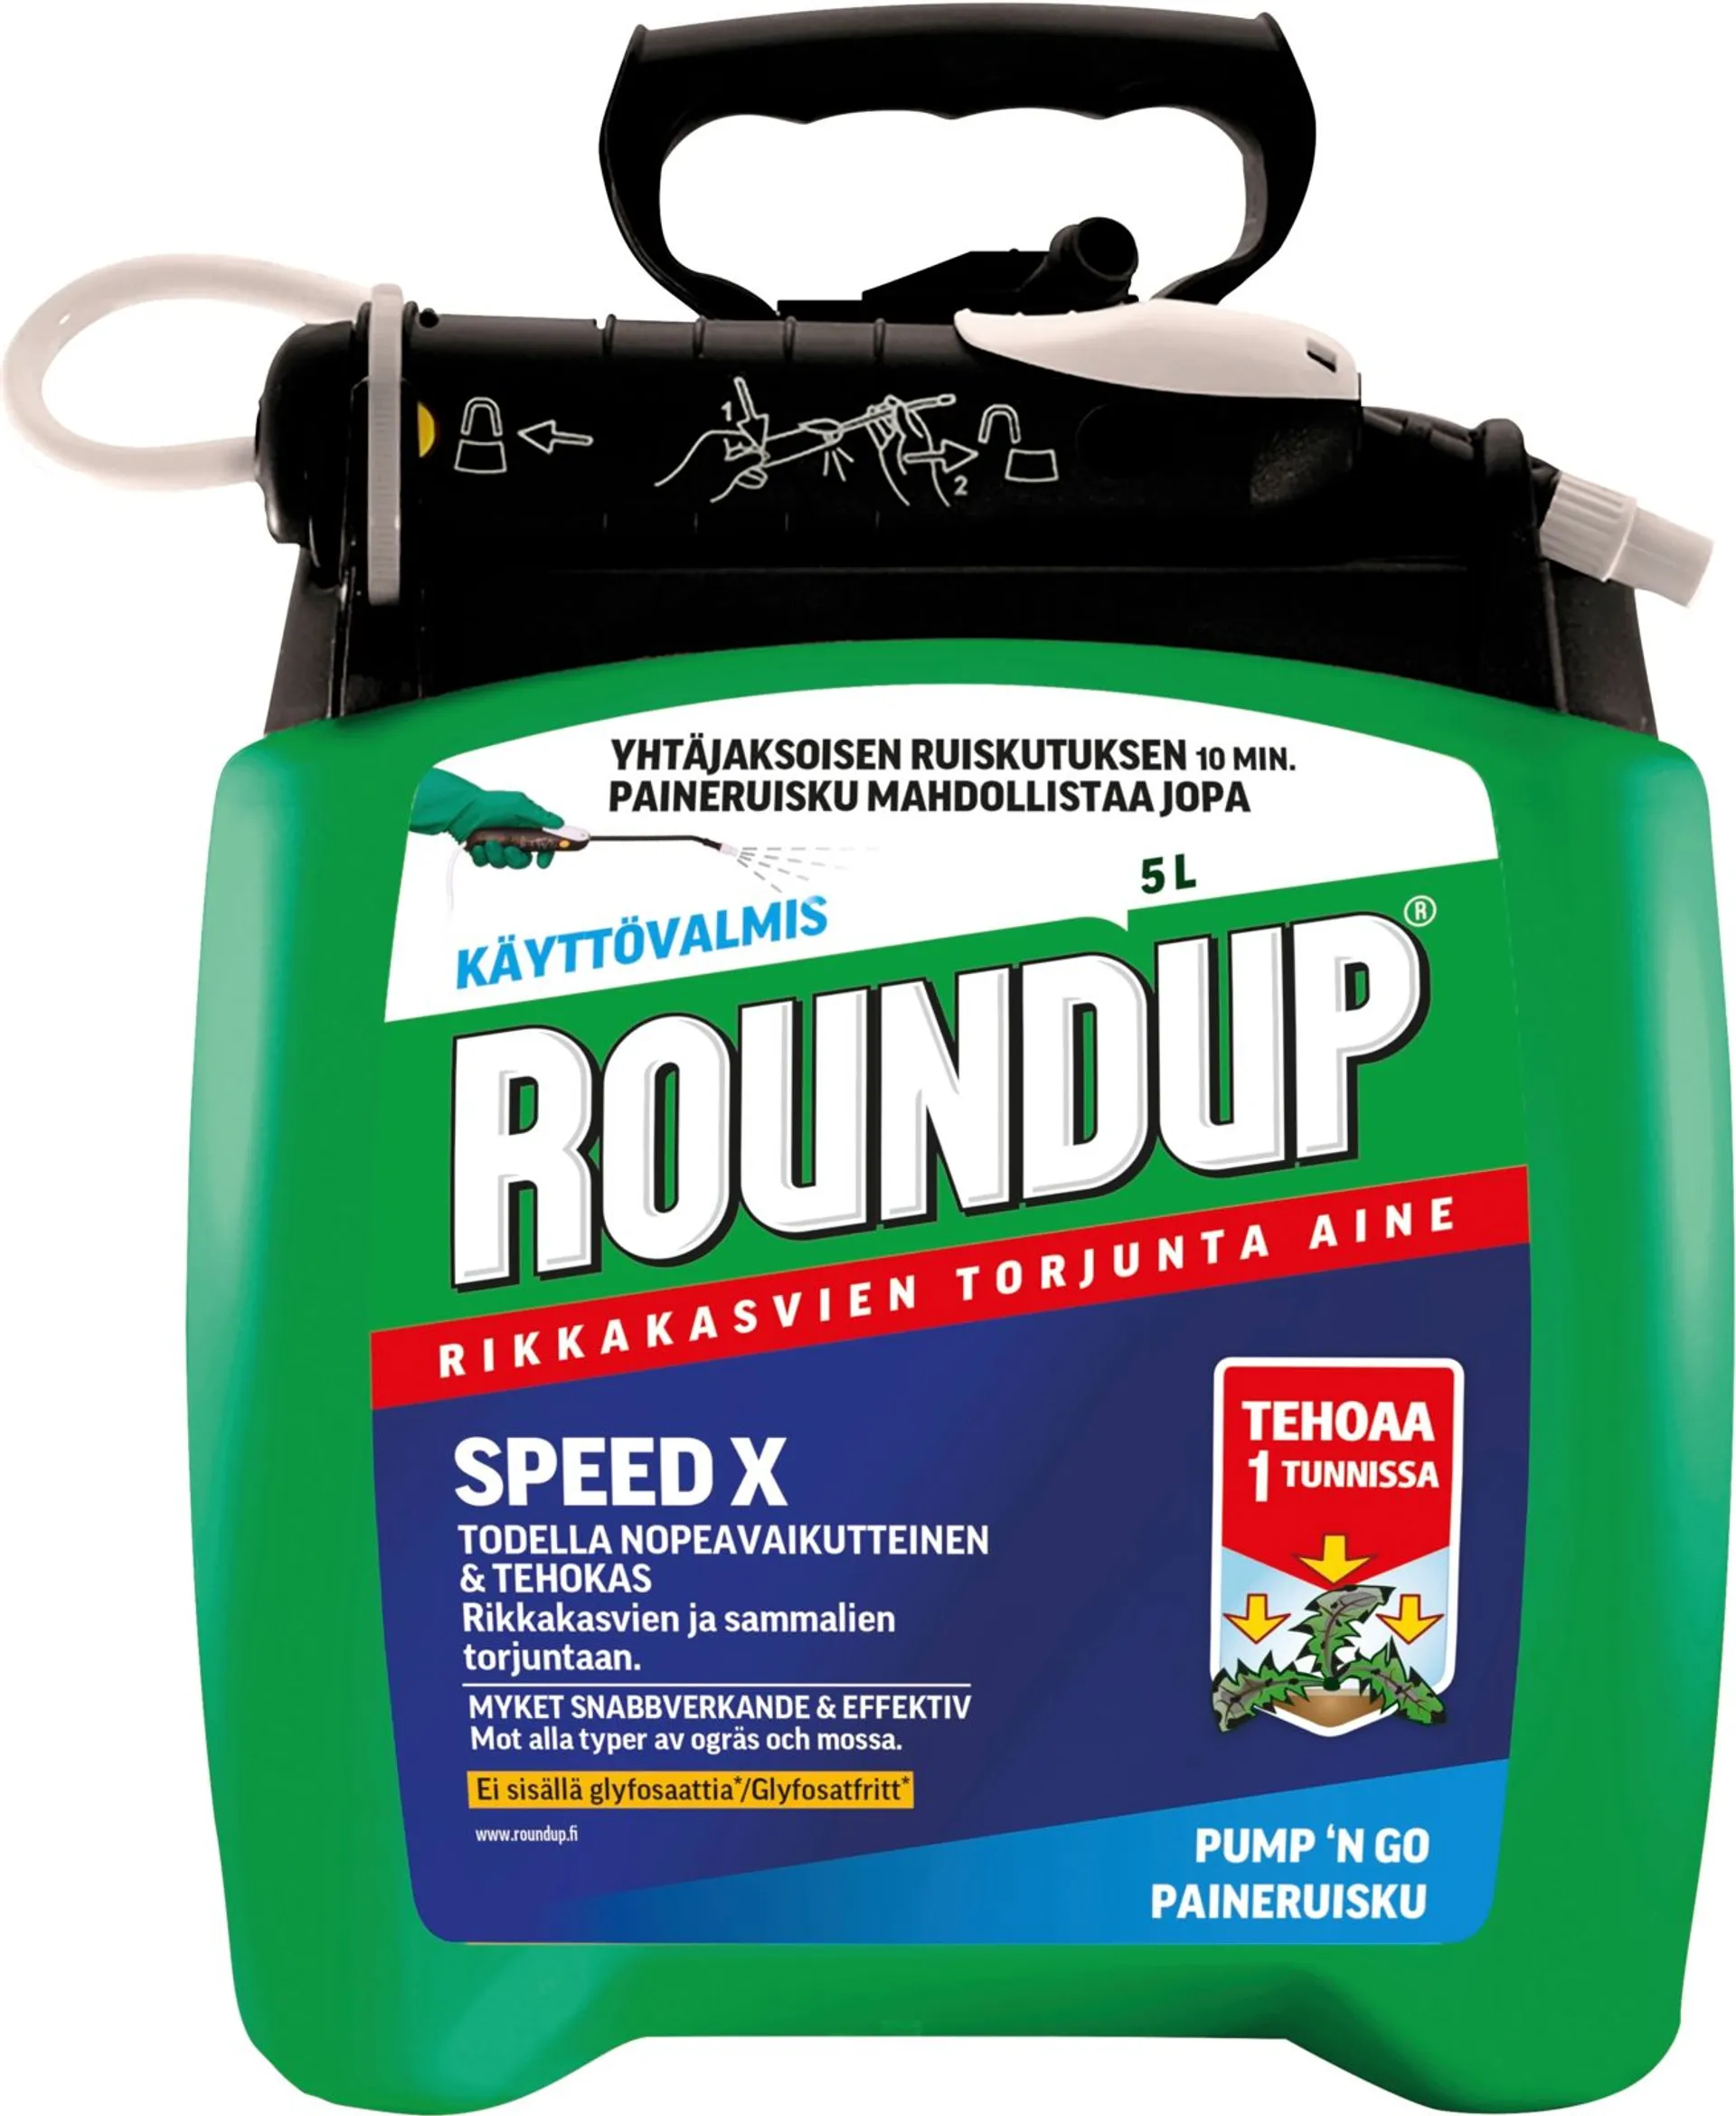 Roundup Speed X Käyttövalmis rikkakasvien torjunta-aine 5L